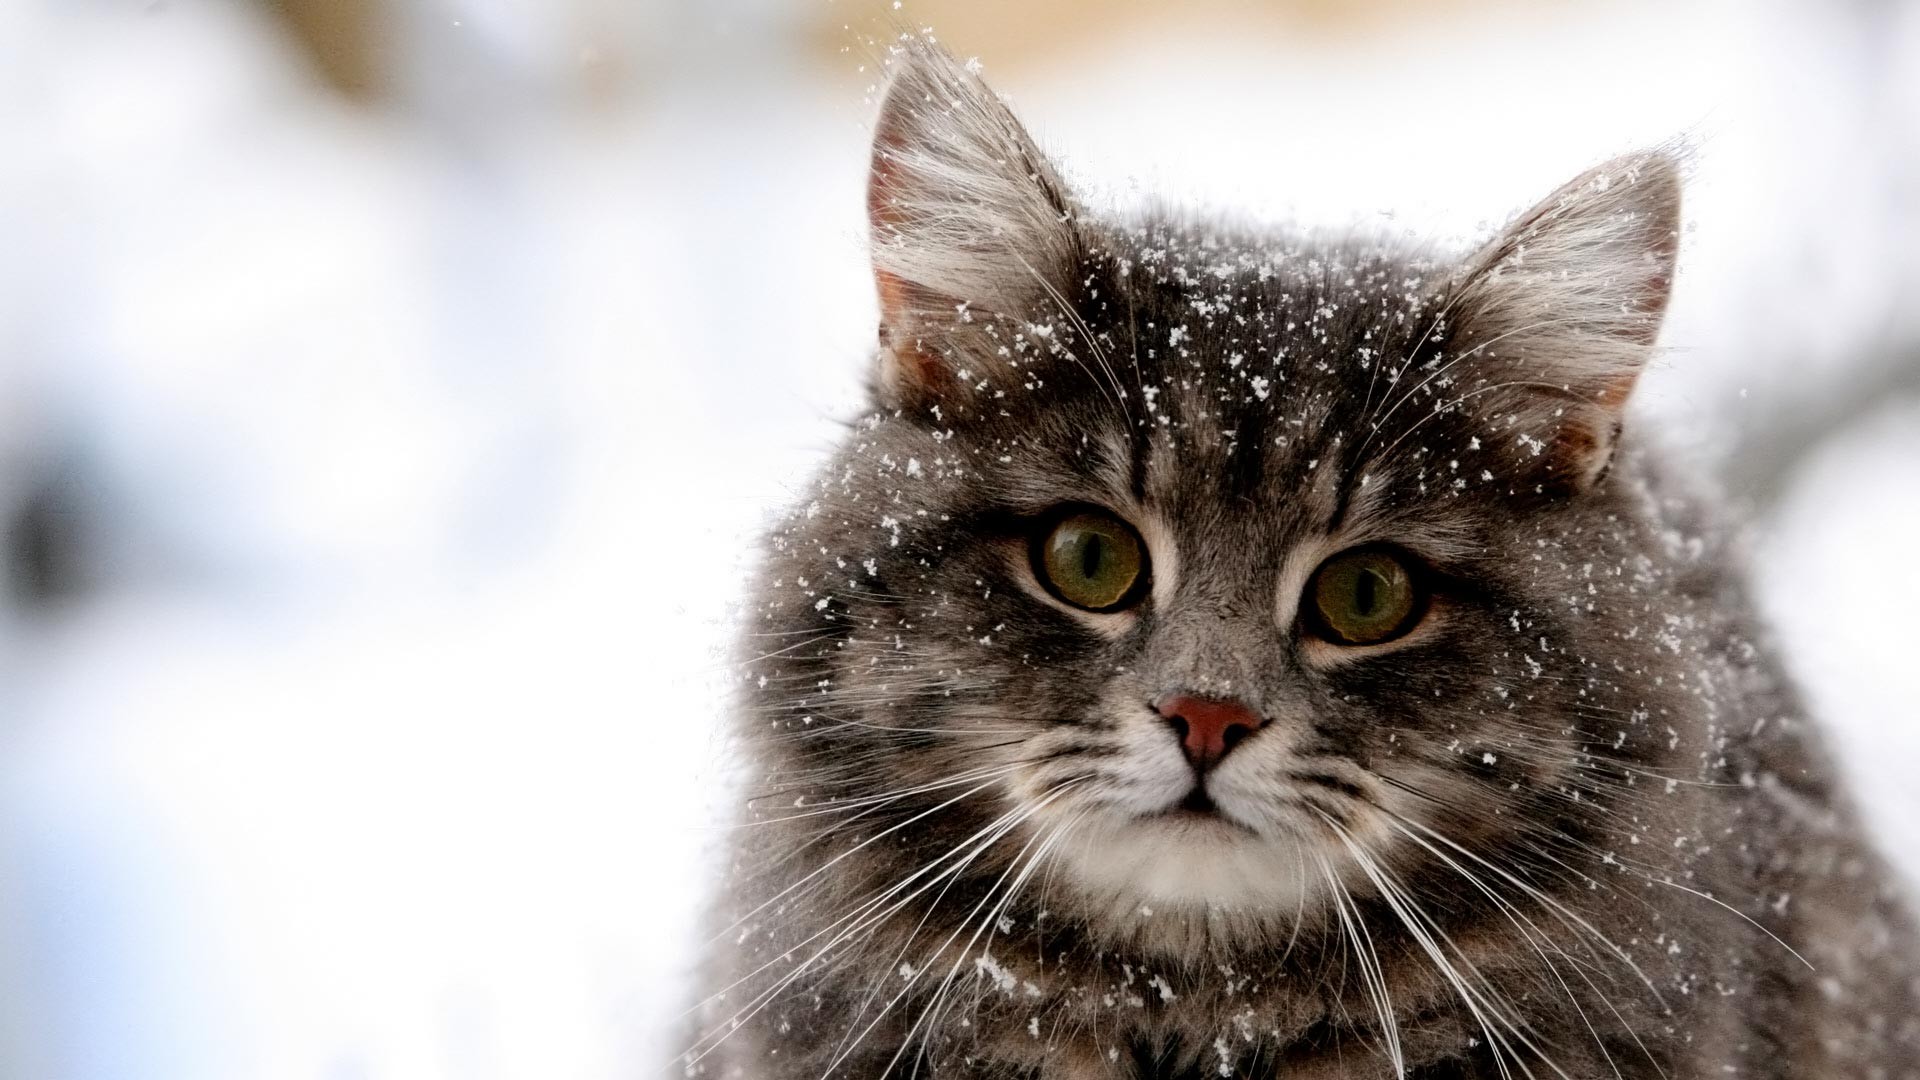 Скачать обои бесплатно Животные, Зима, Серый, Кошка, Снегопад, Кошки картинка на рабочий стол ПК